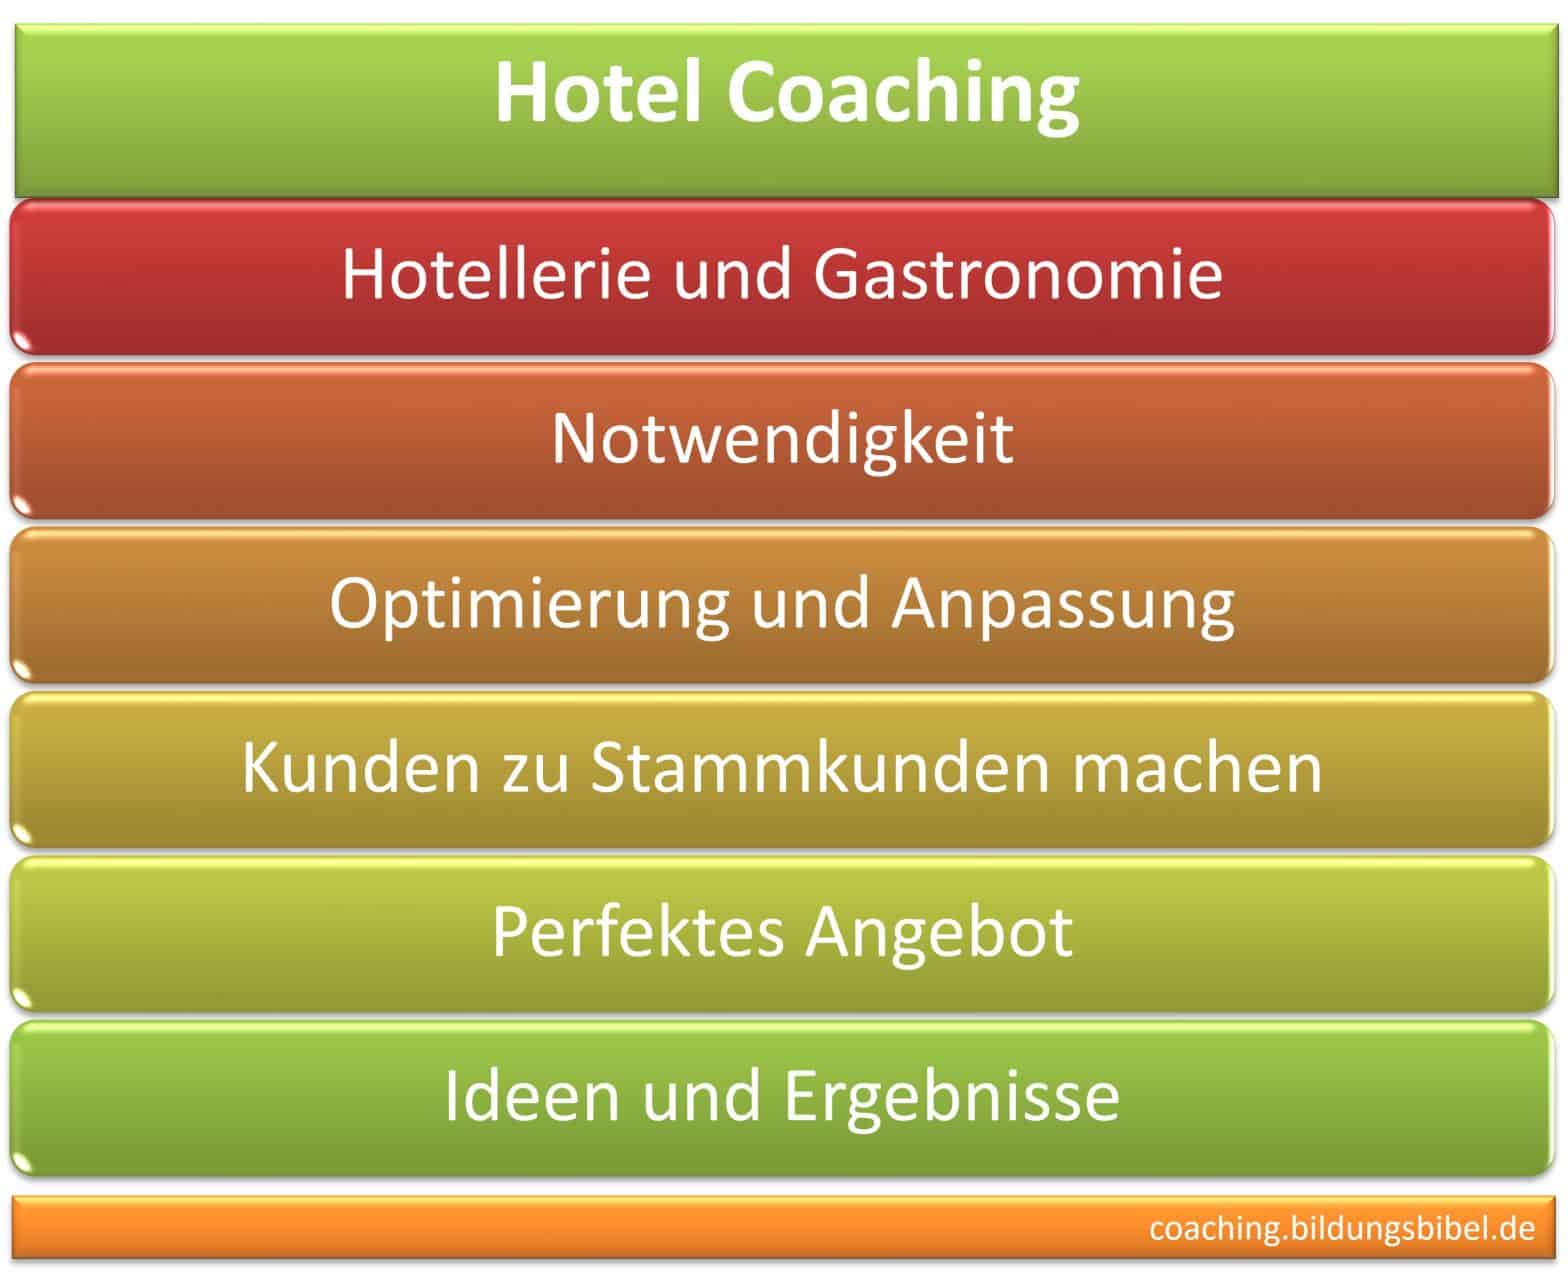 Hotel Coaching und Coach für Beratung, Gastronomie Coaching, Optimierung und Anpassung, Stammkunden gewinnen, starken Ideen und Ergebnisse.